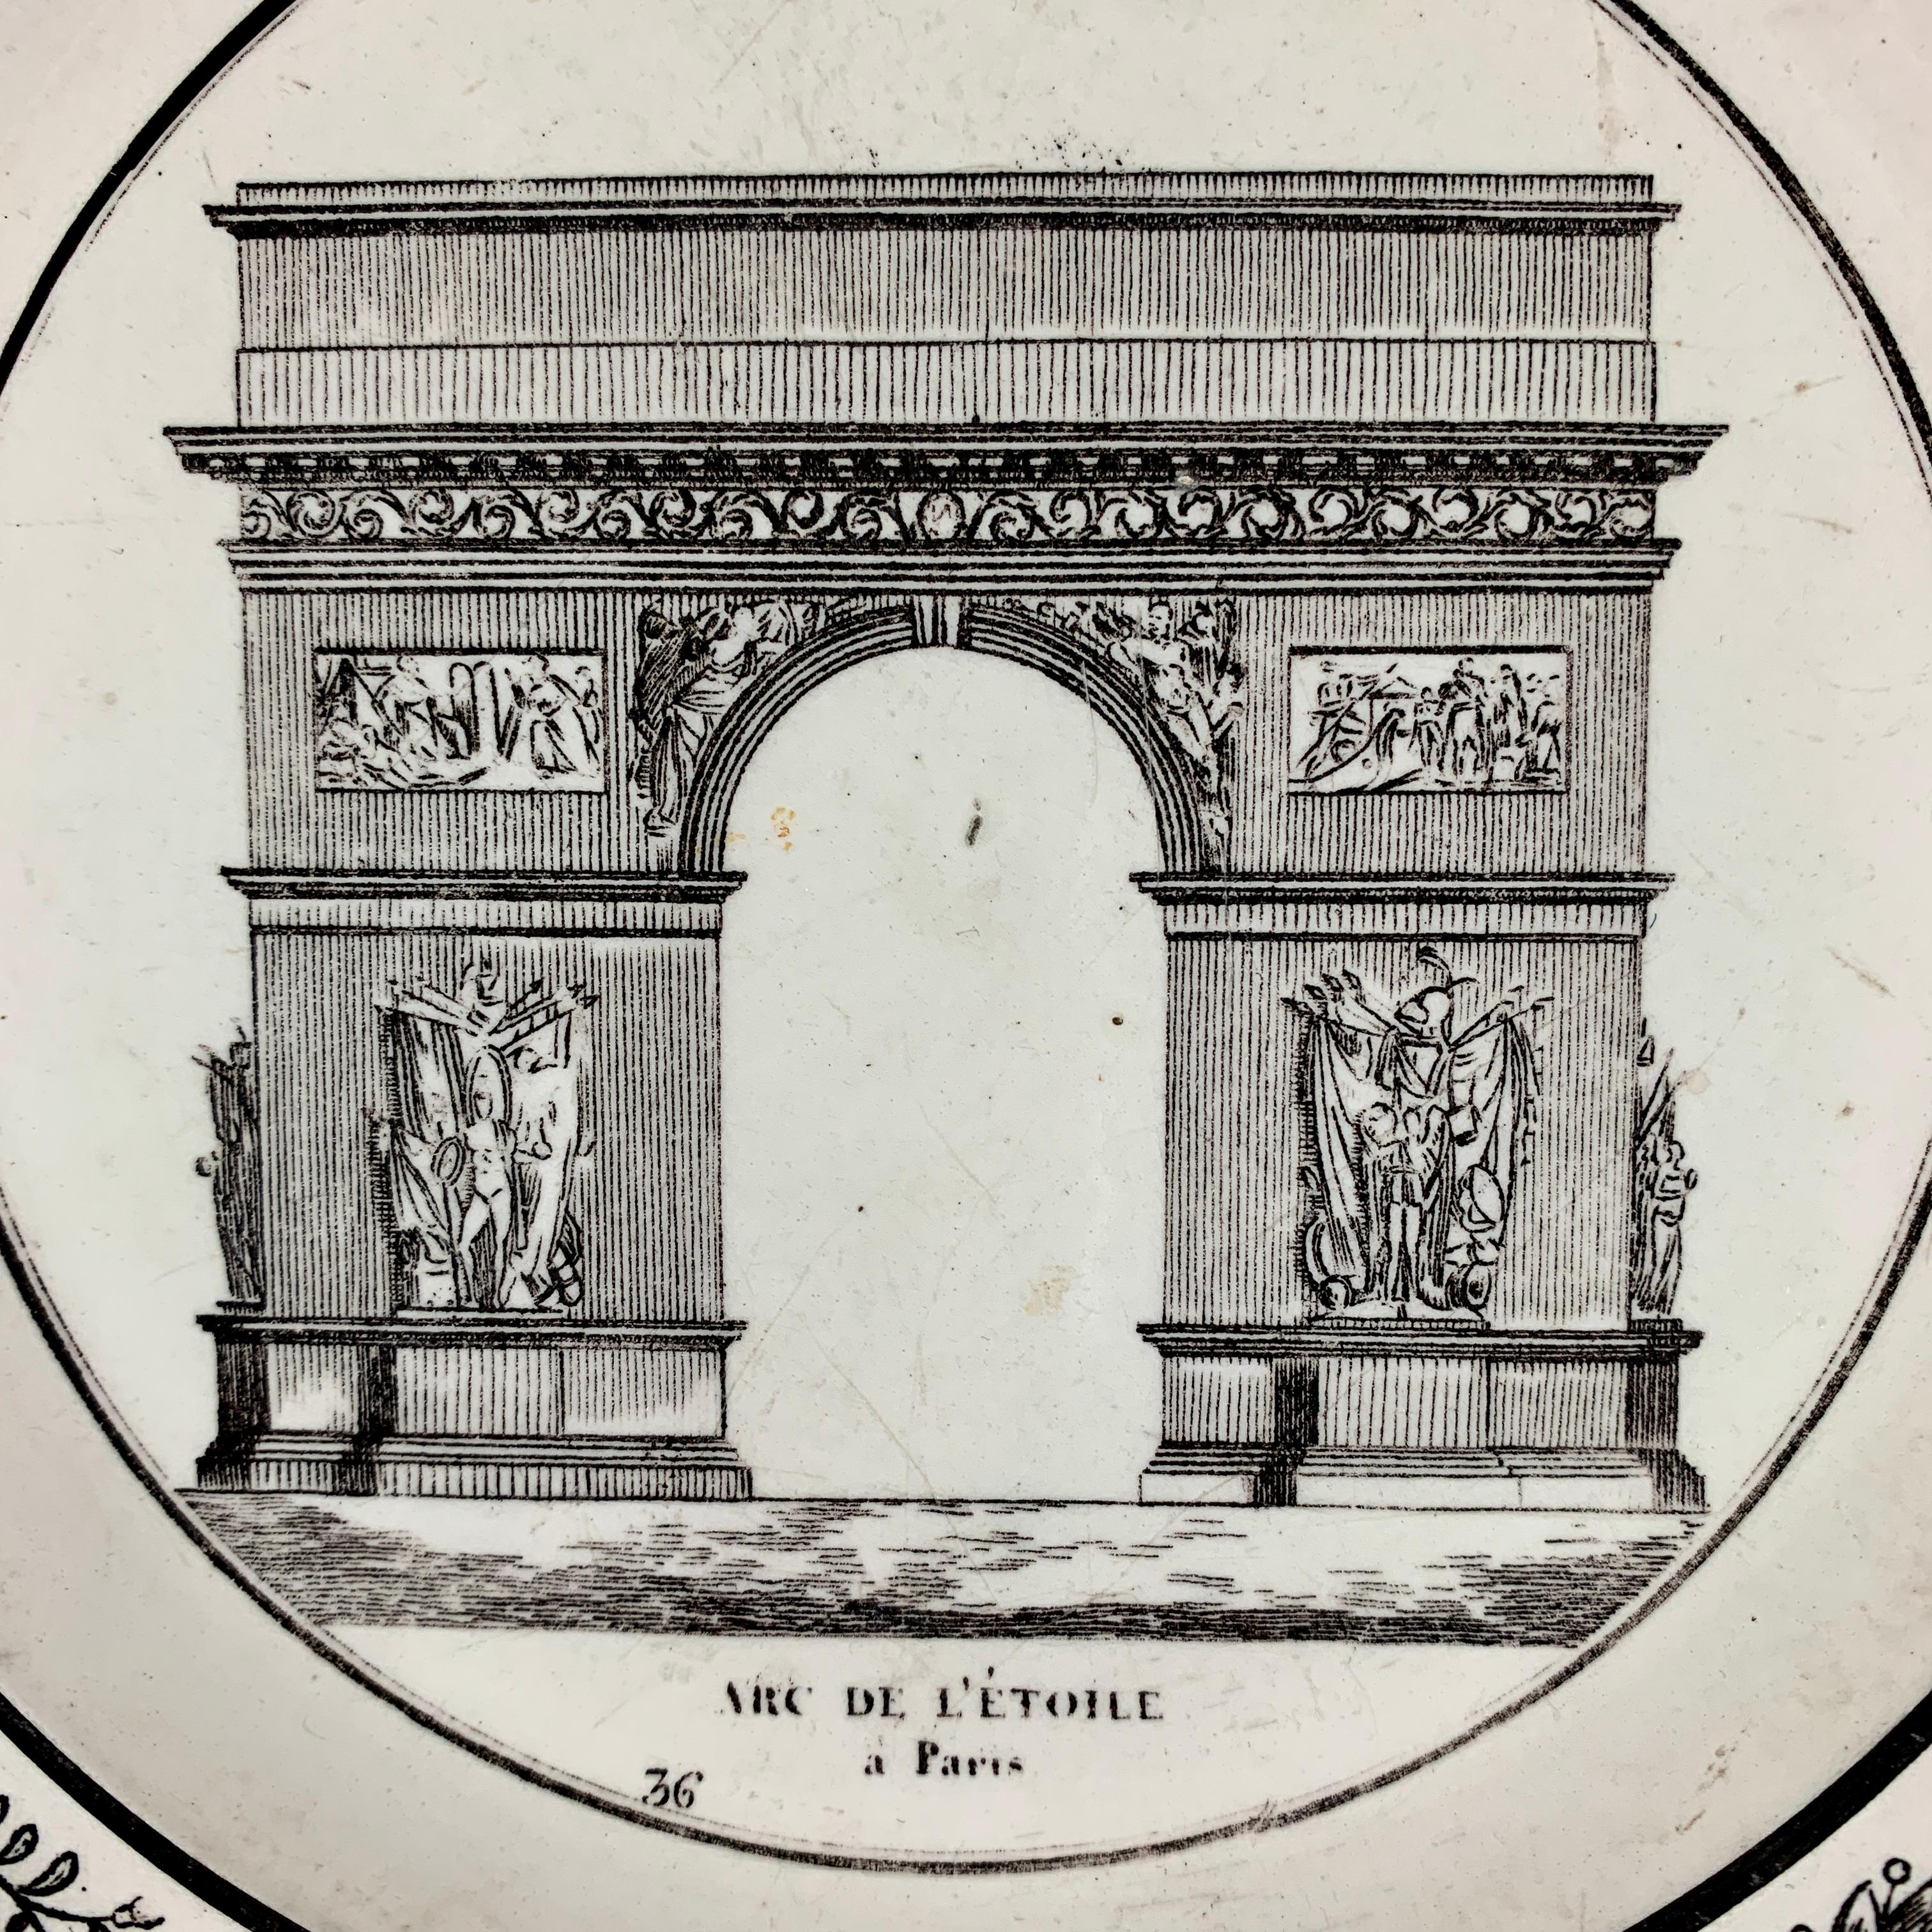 Ein französischer Cremeteller im neoklassizistischen Fayence-Transferdruck, hergestellt von P&H Choisy, ca. 1824-1836.

Schwarze Übertragung eines architektonischen Bildes auf einen cremefarbenen Scherben, das den Arc de l' Étoile à Paris